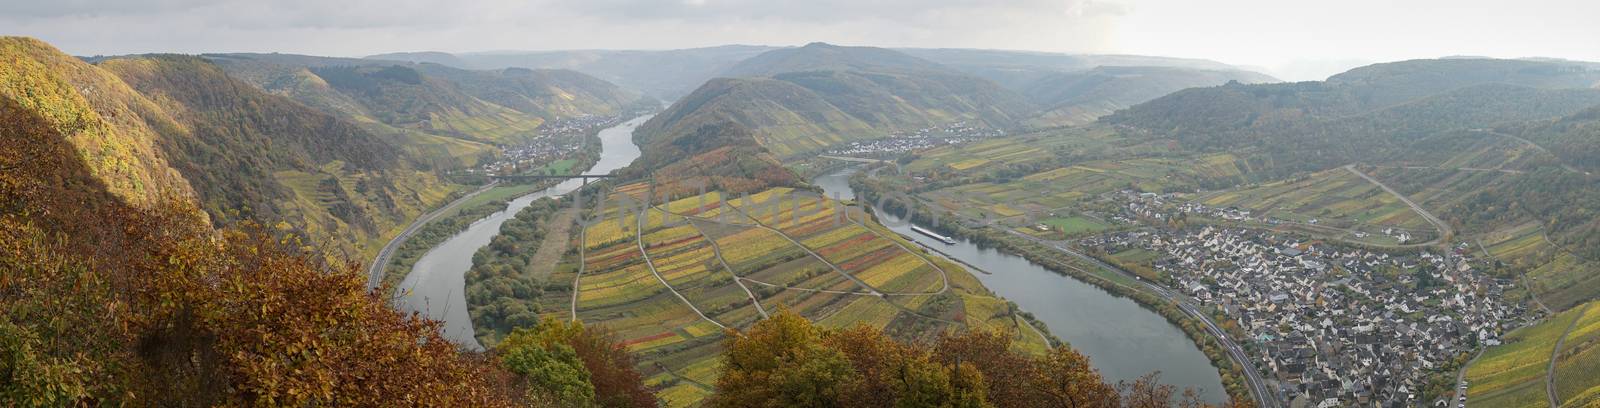 Moselle river loop, Bremm, Germany, Europe by alfotokunst